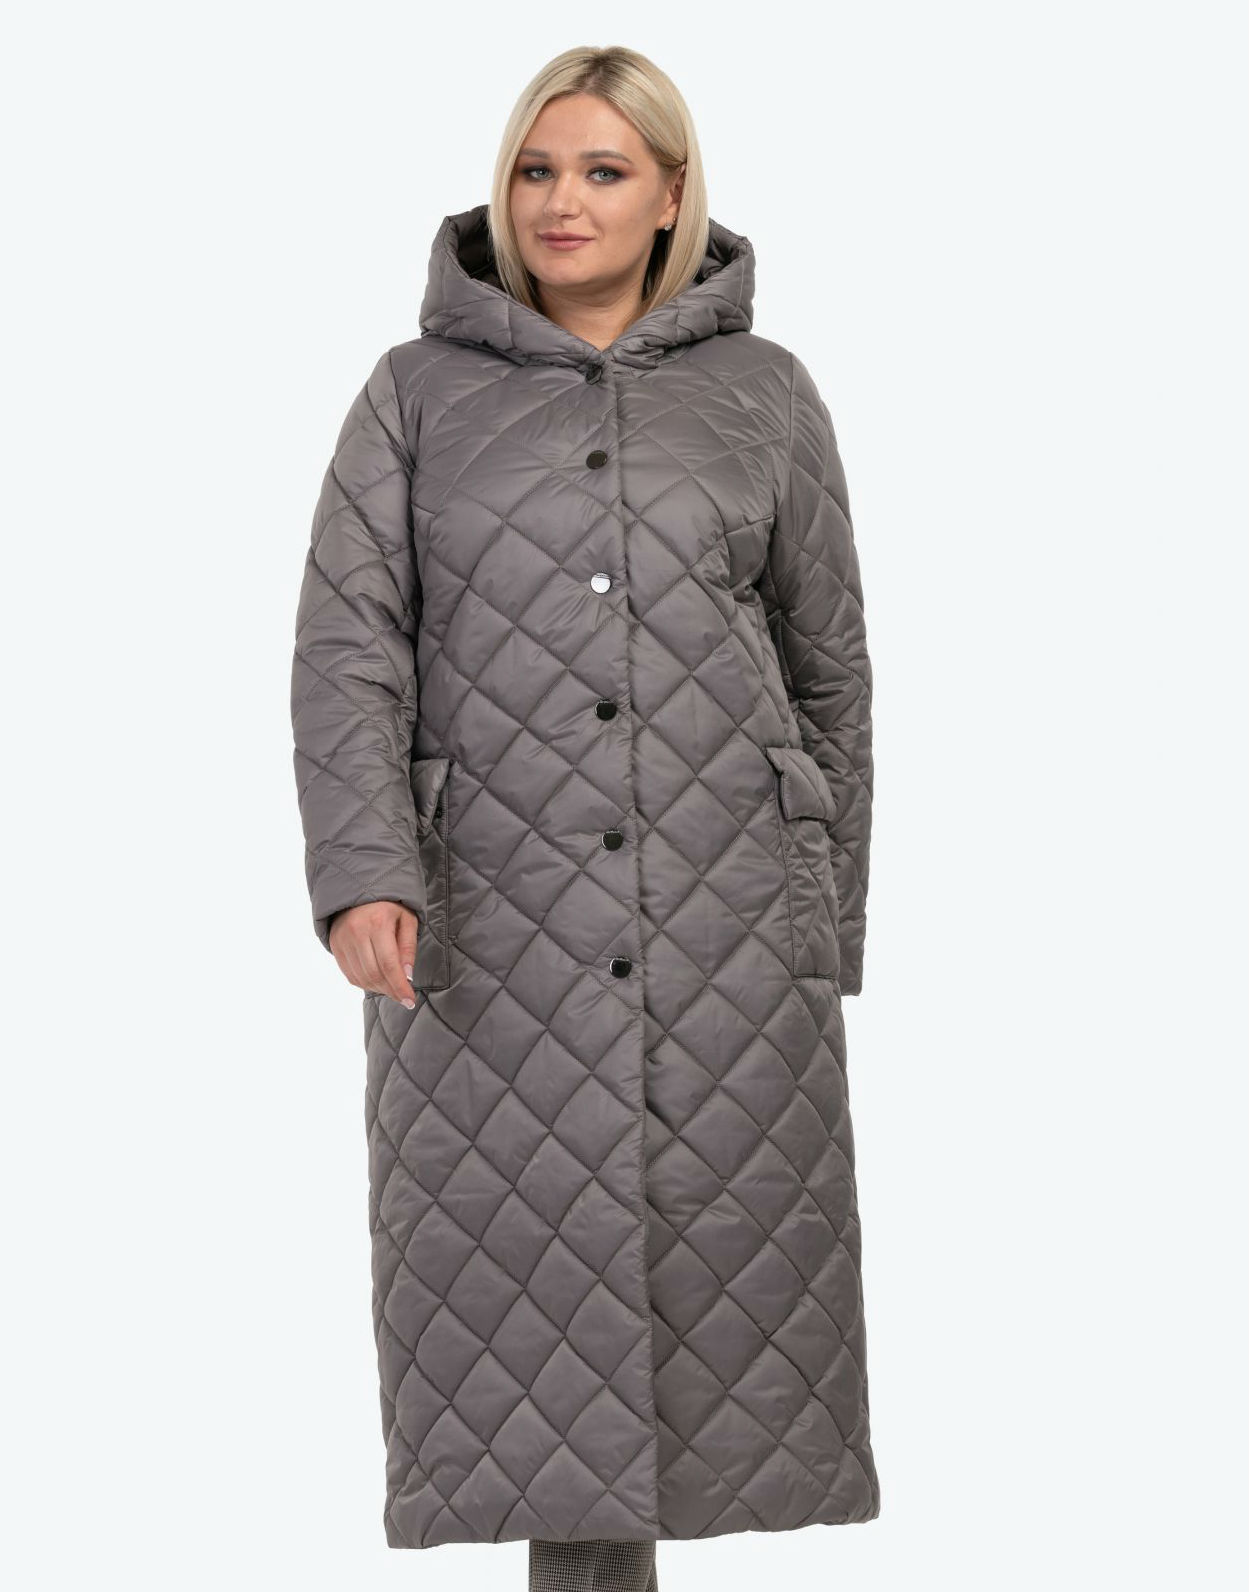 Длинное стеганое пальто с накладными карманами, капучино